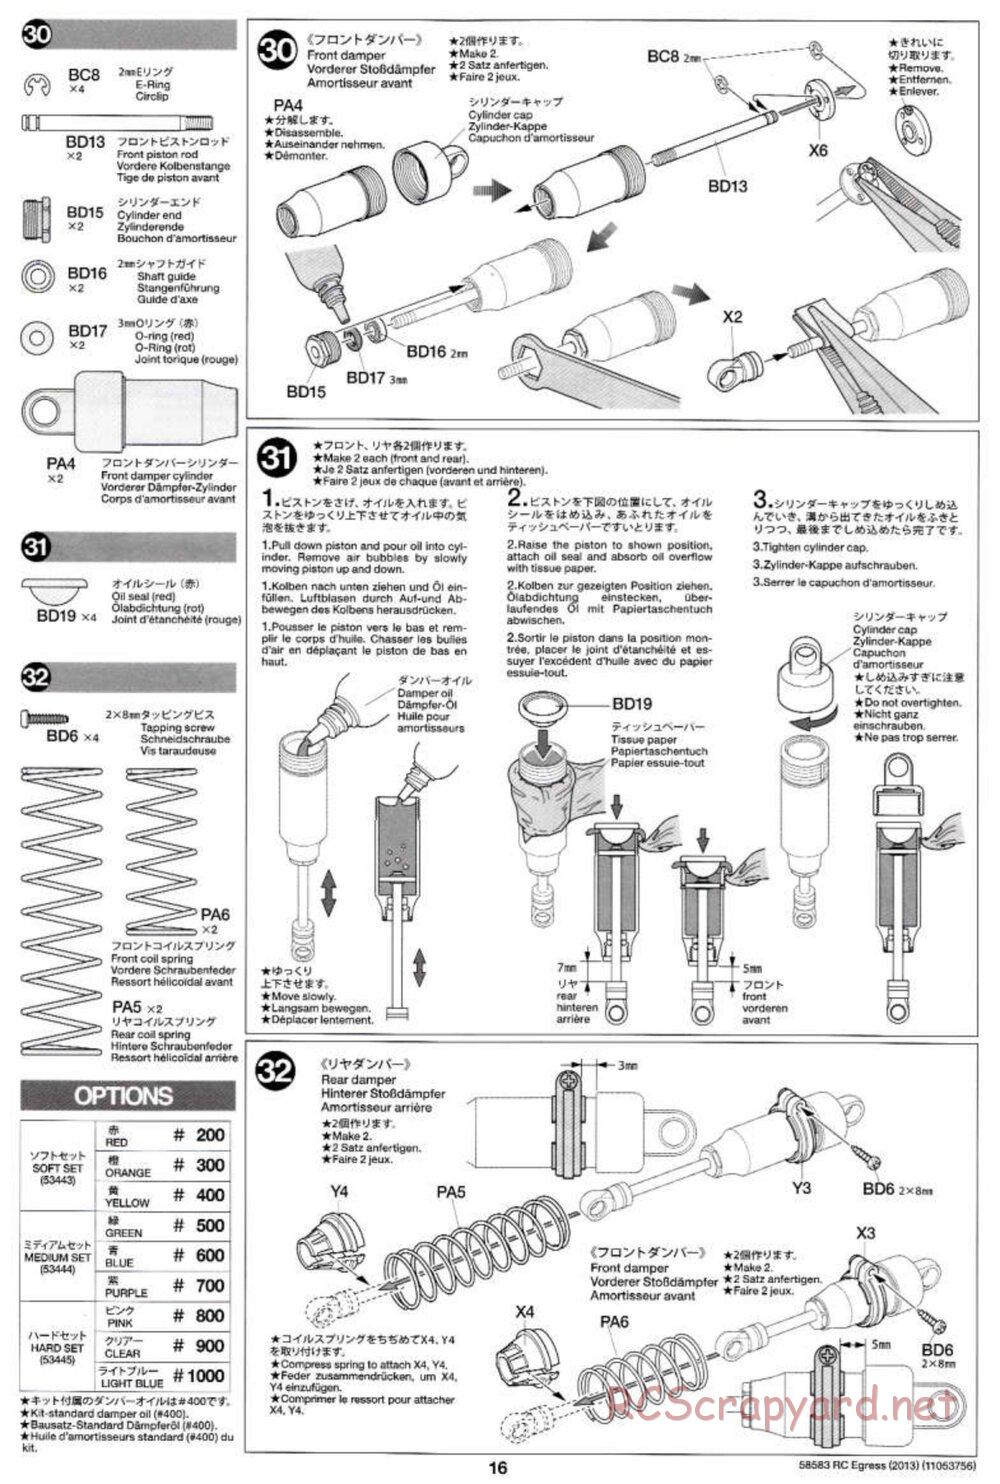 Tamiya - Egress 2013 - AV Chassis - Manual - Page 16